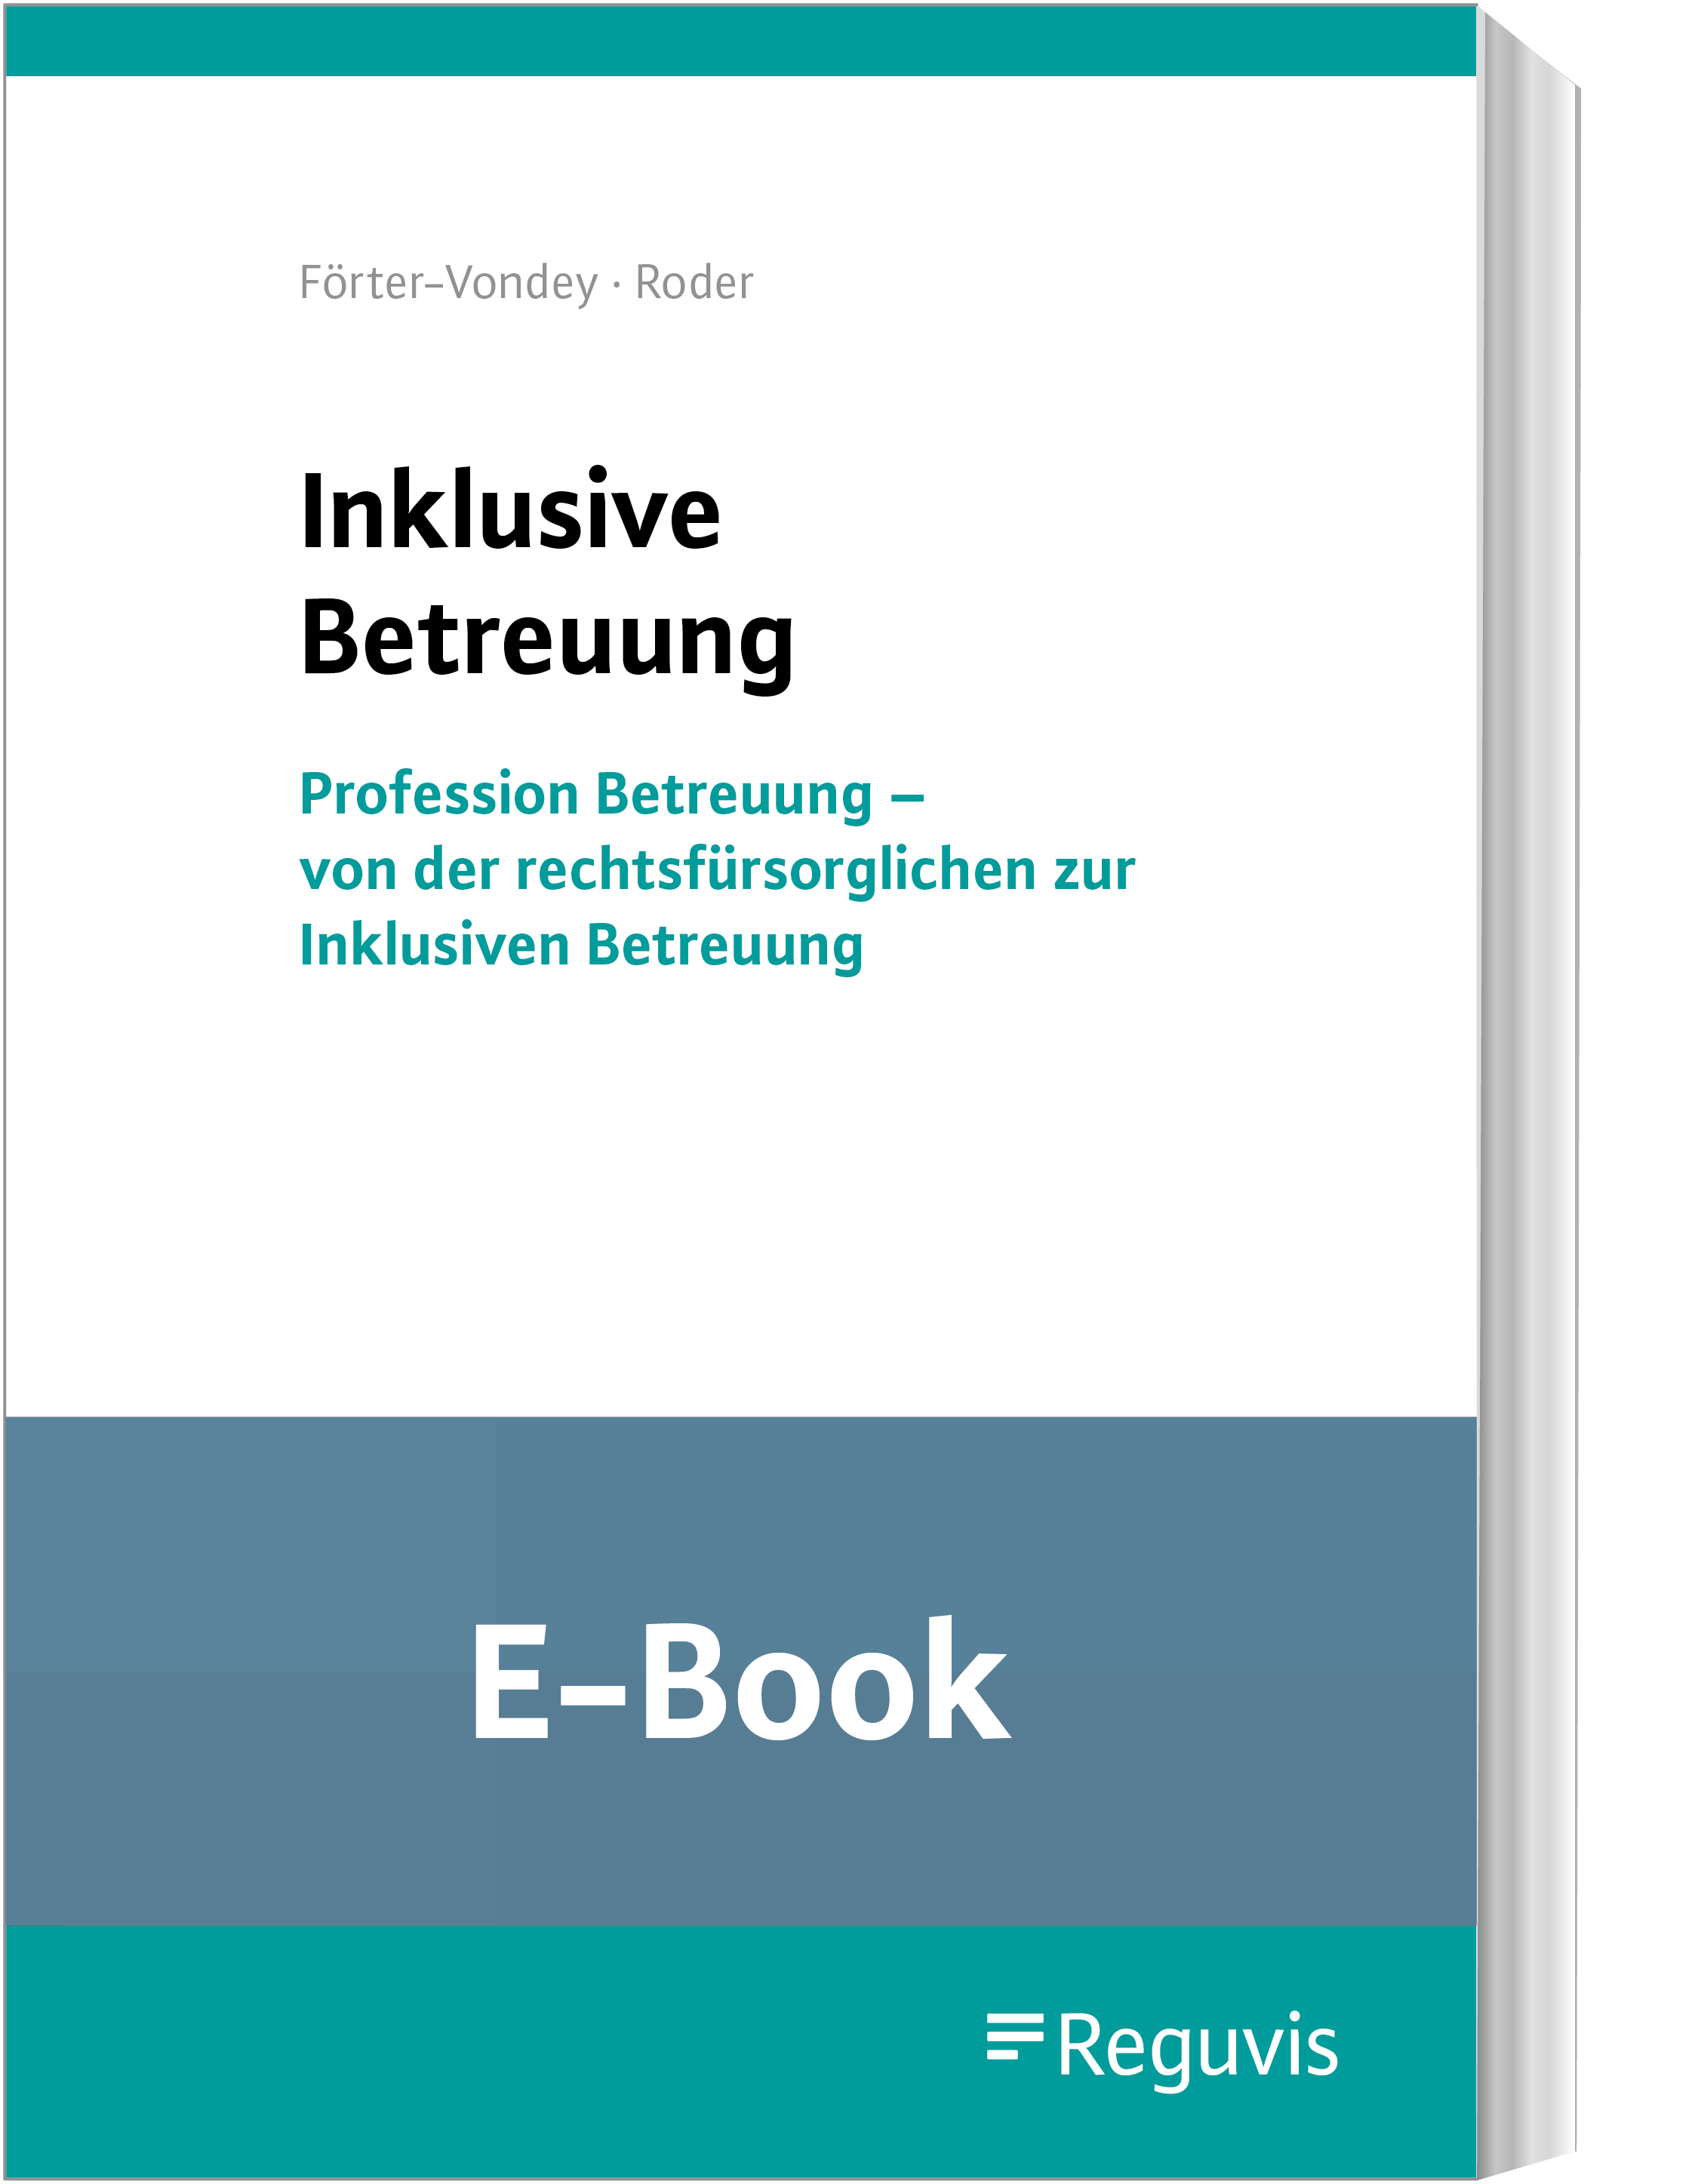 Inklusive Betreuung (E-Book)